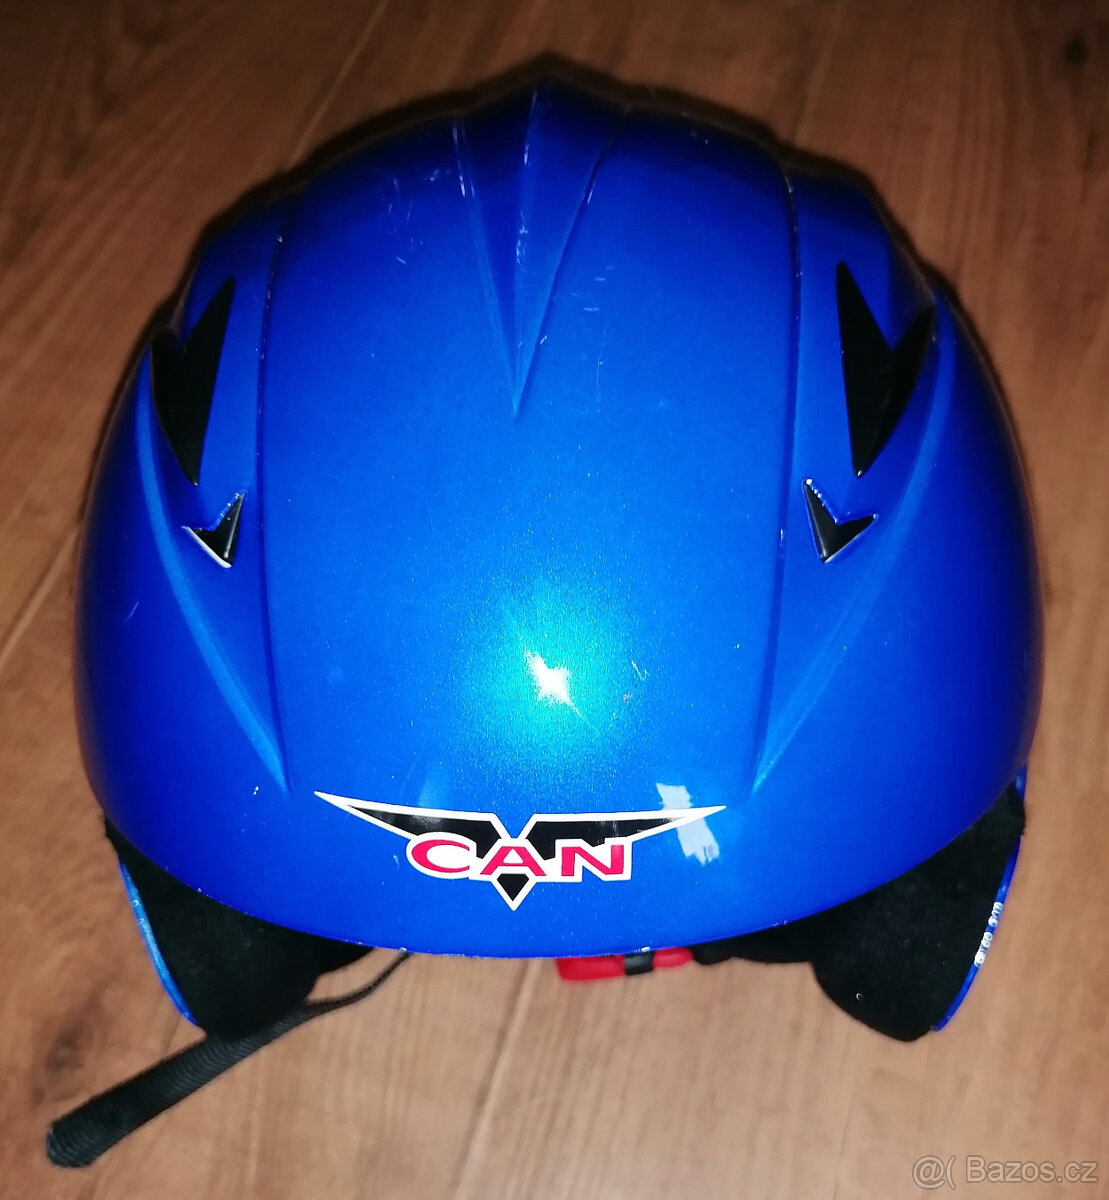 Helma na lyže - dětská CAN vel. XXS (51-52cm)